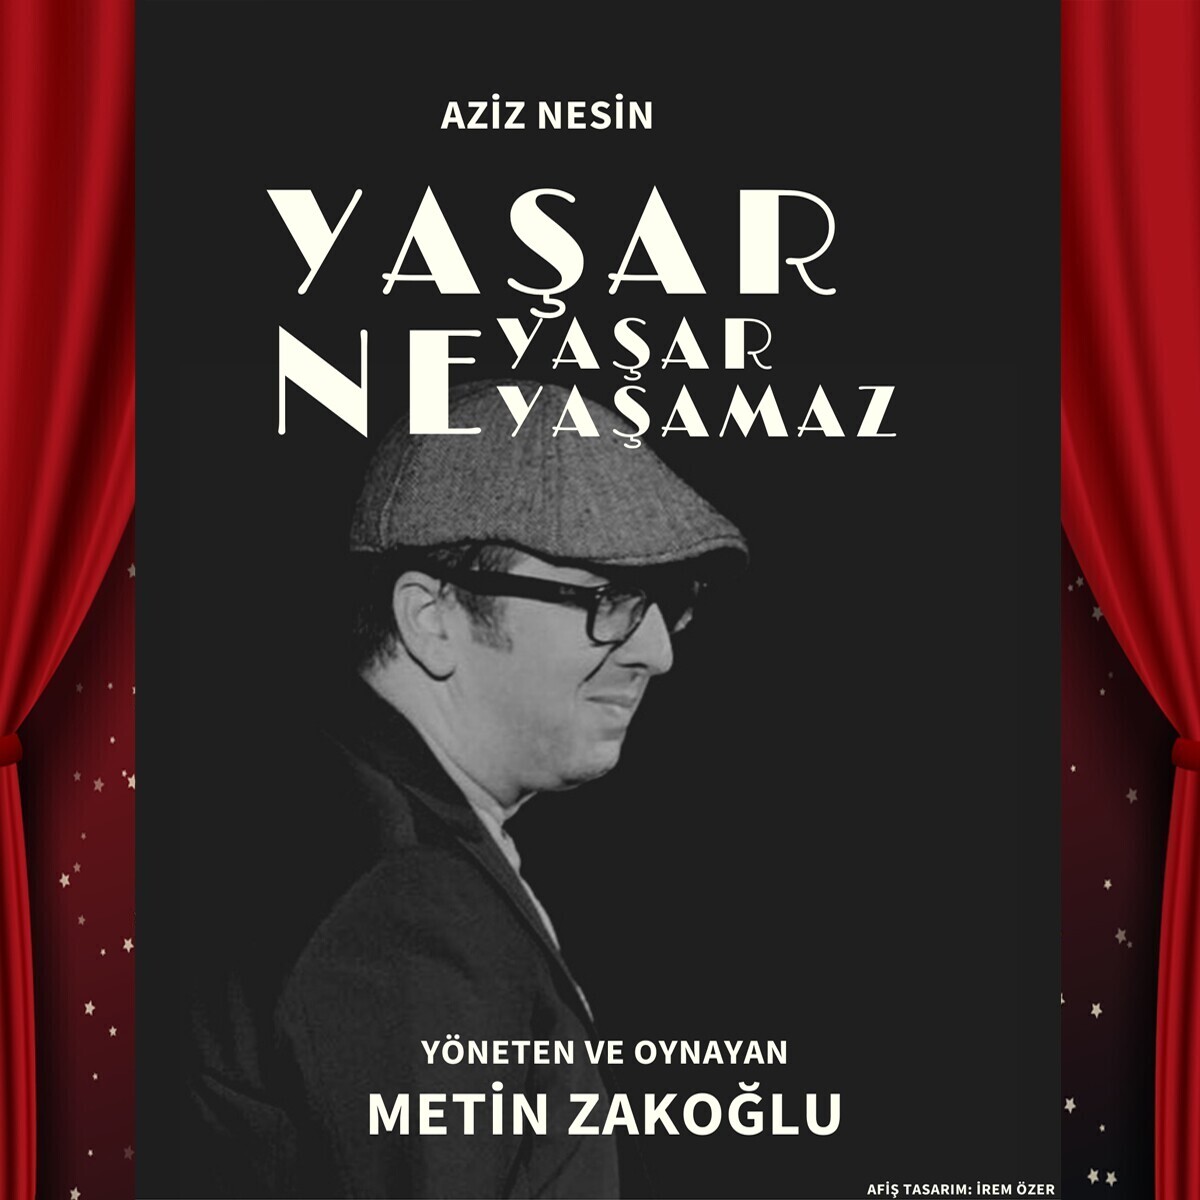 Aziz Nesin 'Yaşar Ne Yaşar Ne Yaşamaz' Tiyatro Bileti